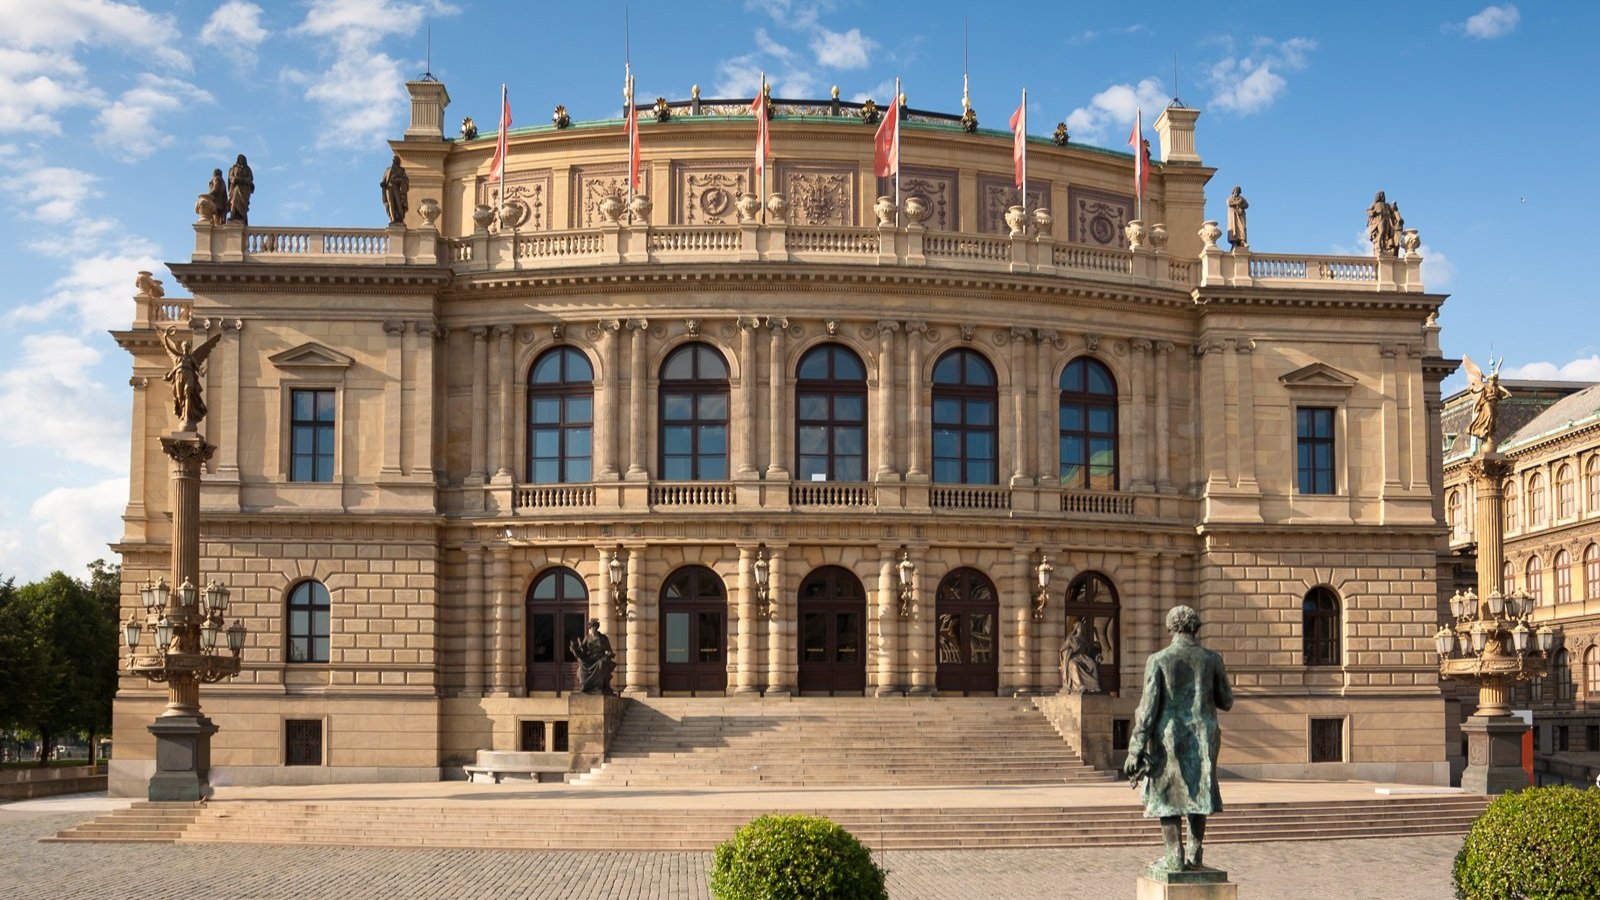 The grand facade of the Rudolfinum in Prague